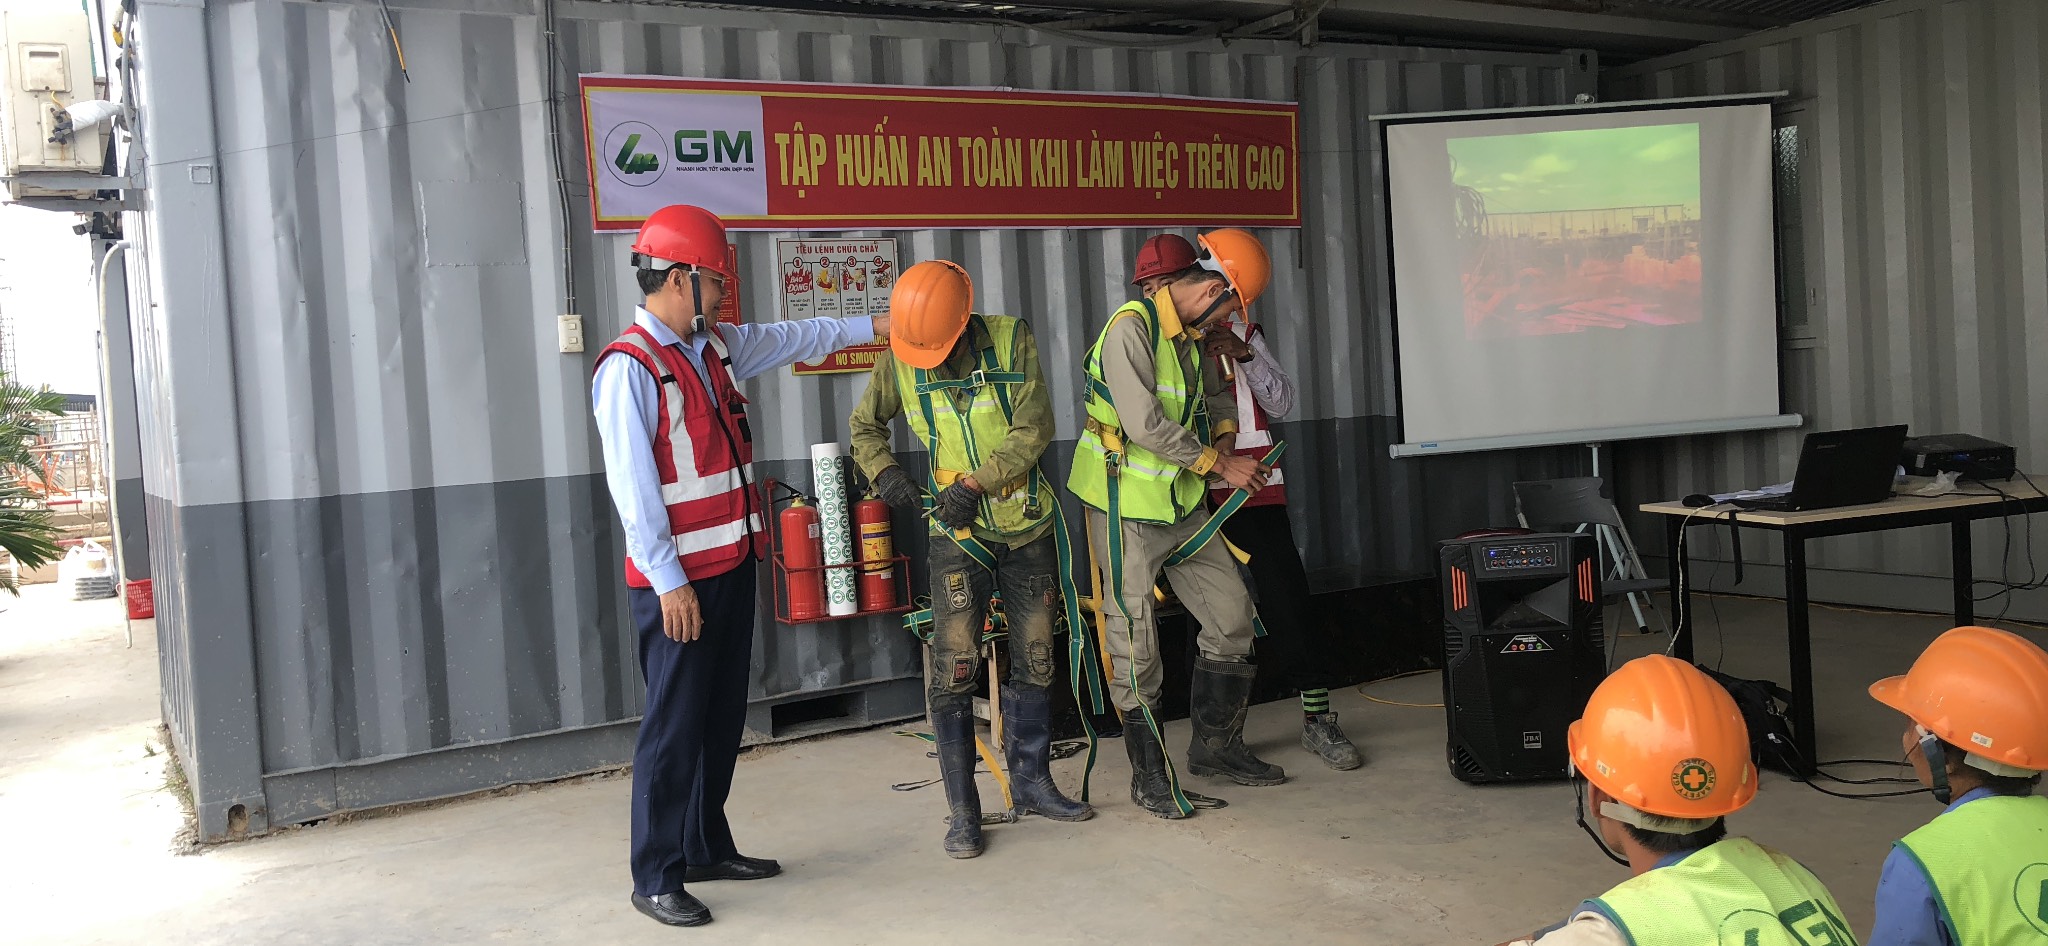 Trung tâm huấn luyện an toàn vệ sinh lao động GM tổ chức tập huấn an toàn làm việc trên cao